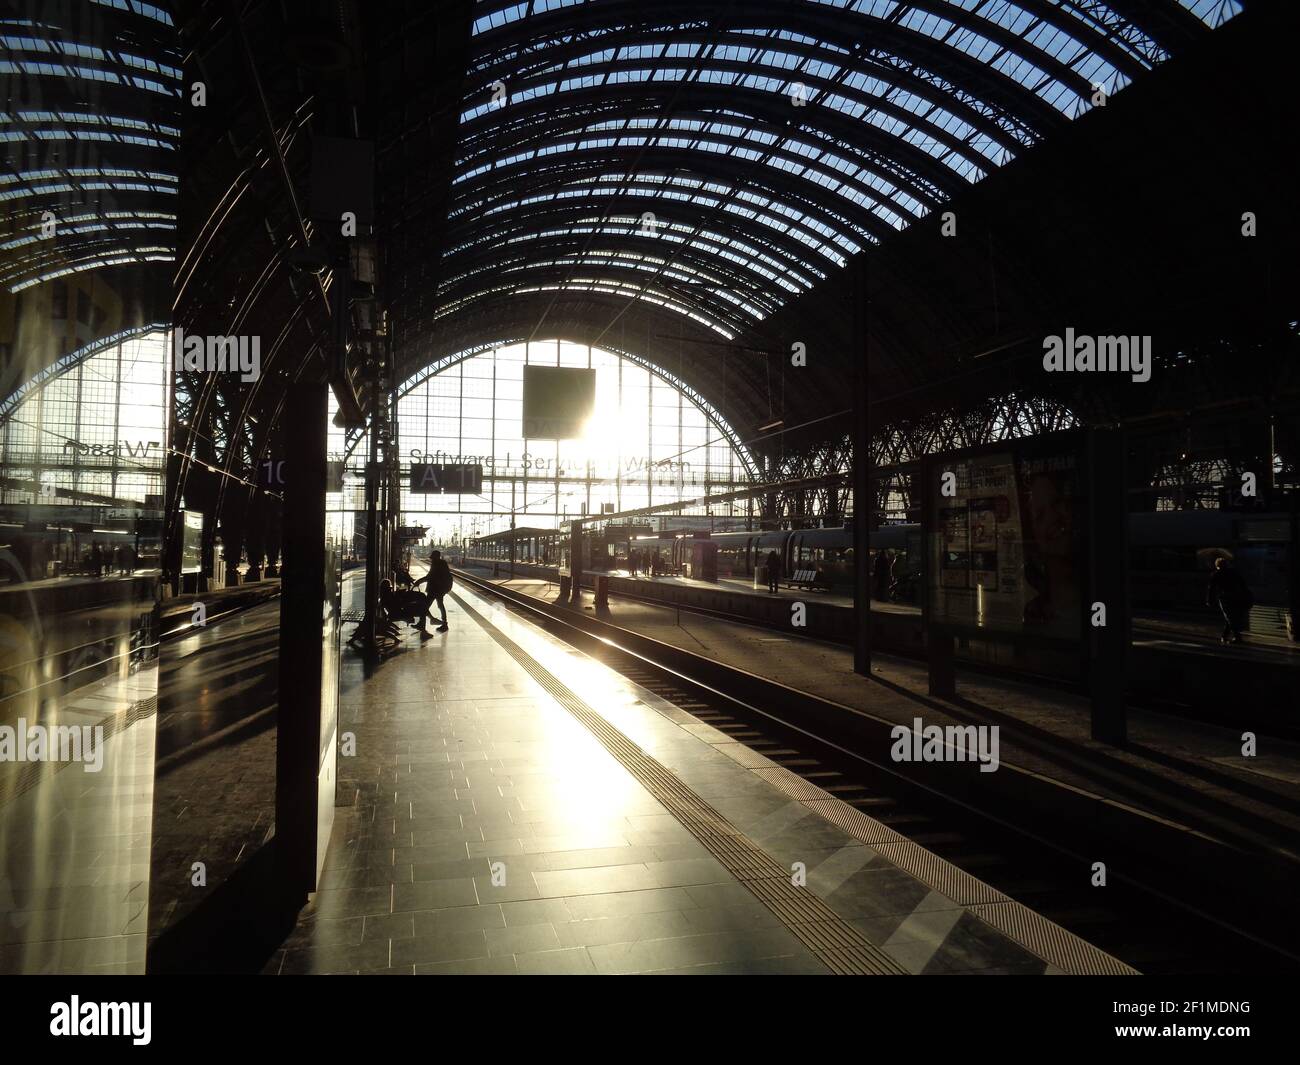 FRANKFURT, DEUTSCHLAND - 28. Feb 2021: Gegenlichteindruck auf dem Bahnsteig, Frankfurter Hauptbahnhof. Die wichtigste Drehscheibe im Schienenverkehr in Deutschland. Stockfoto